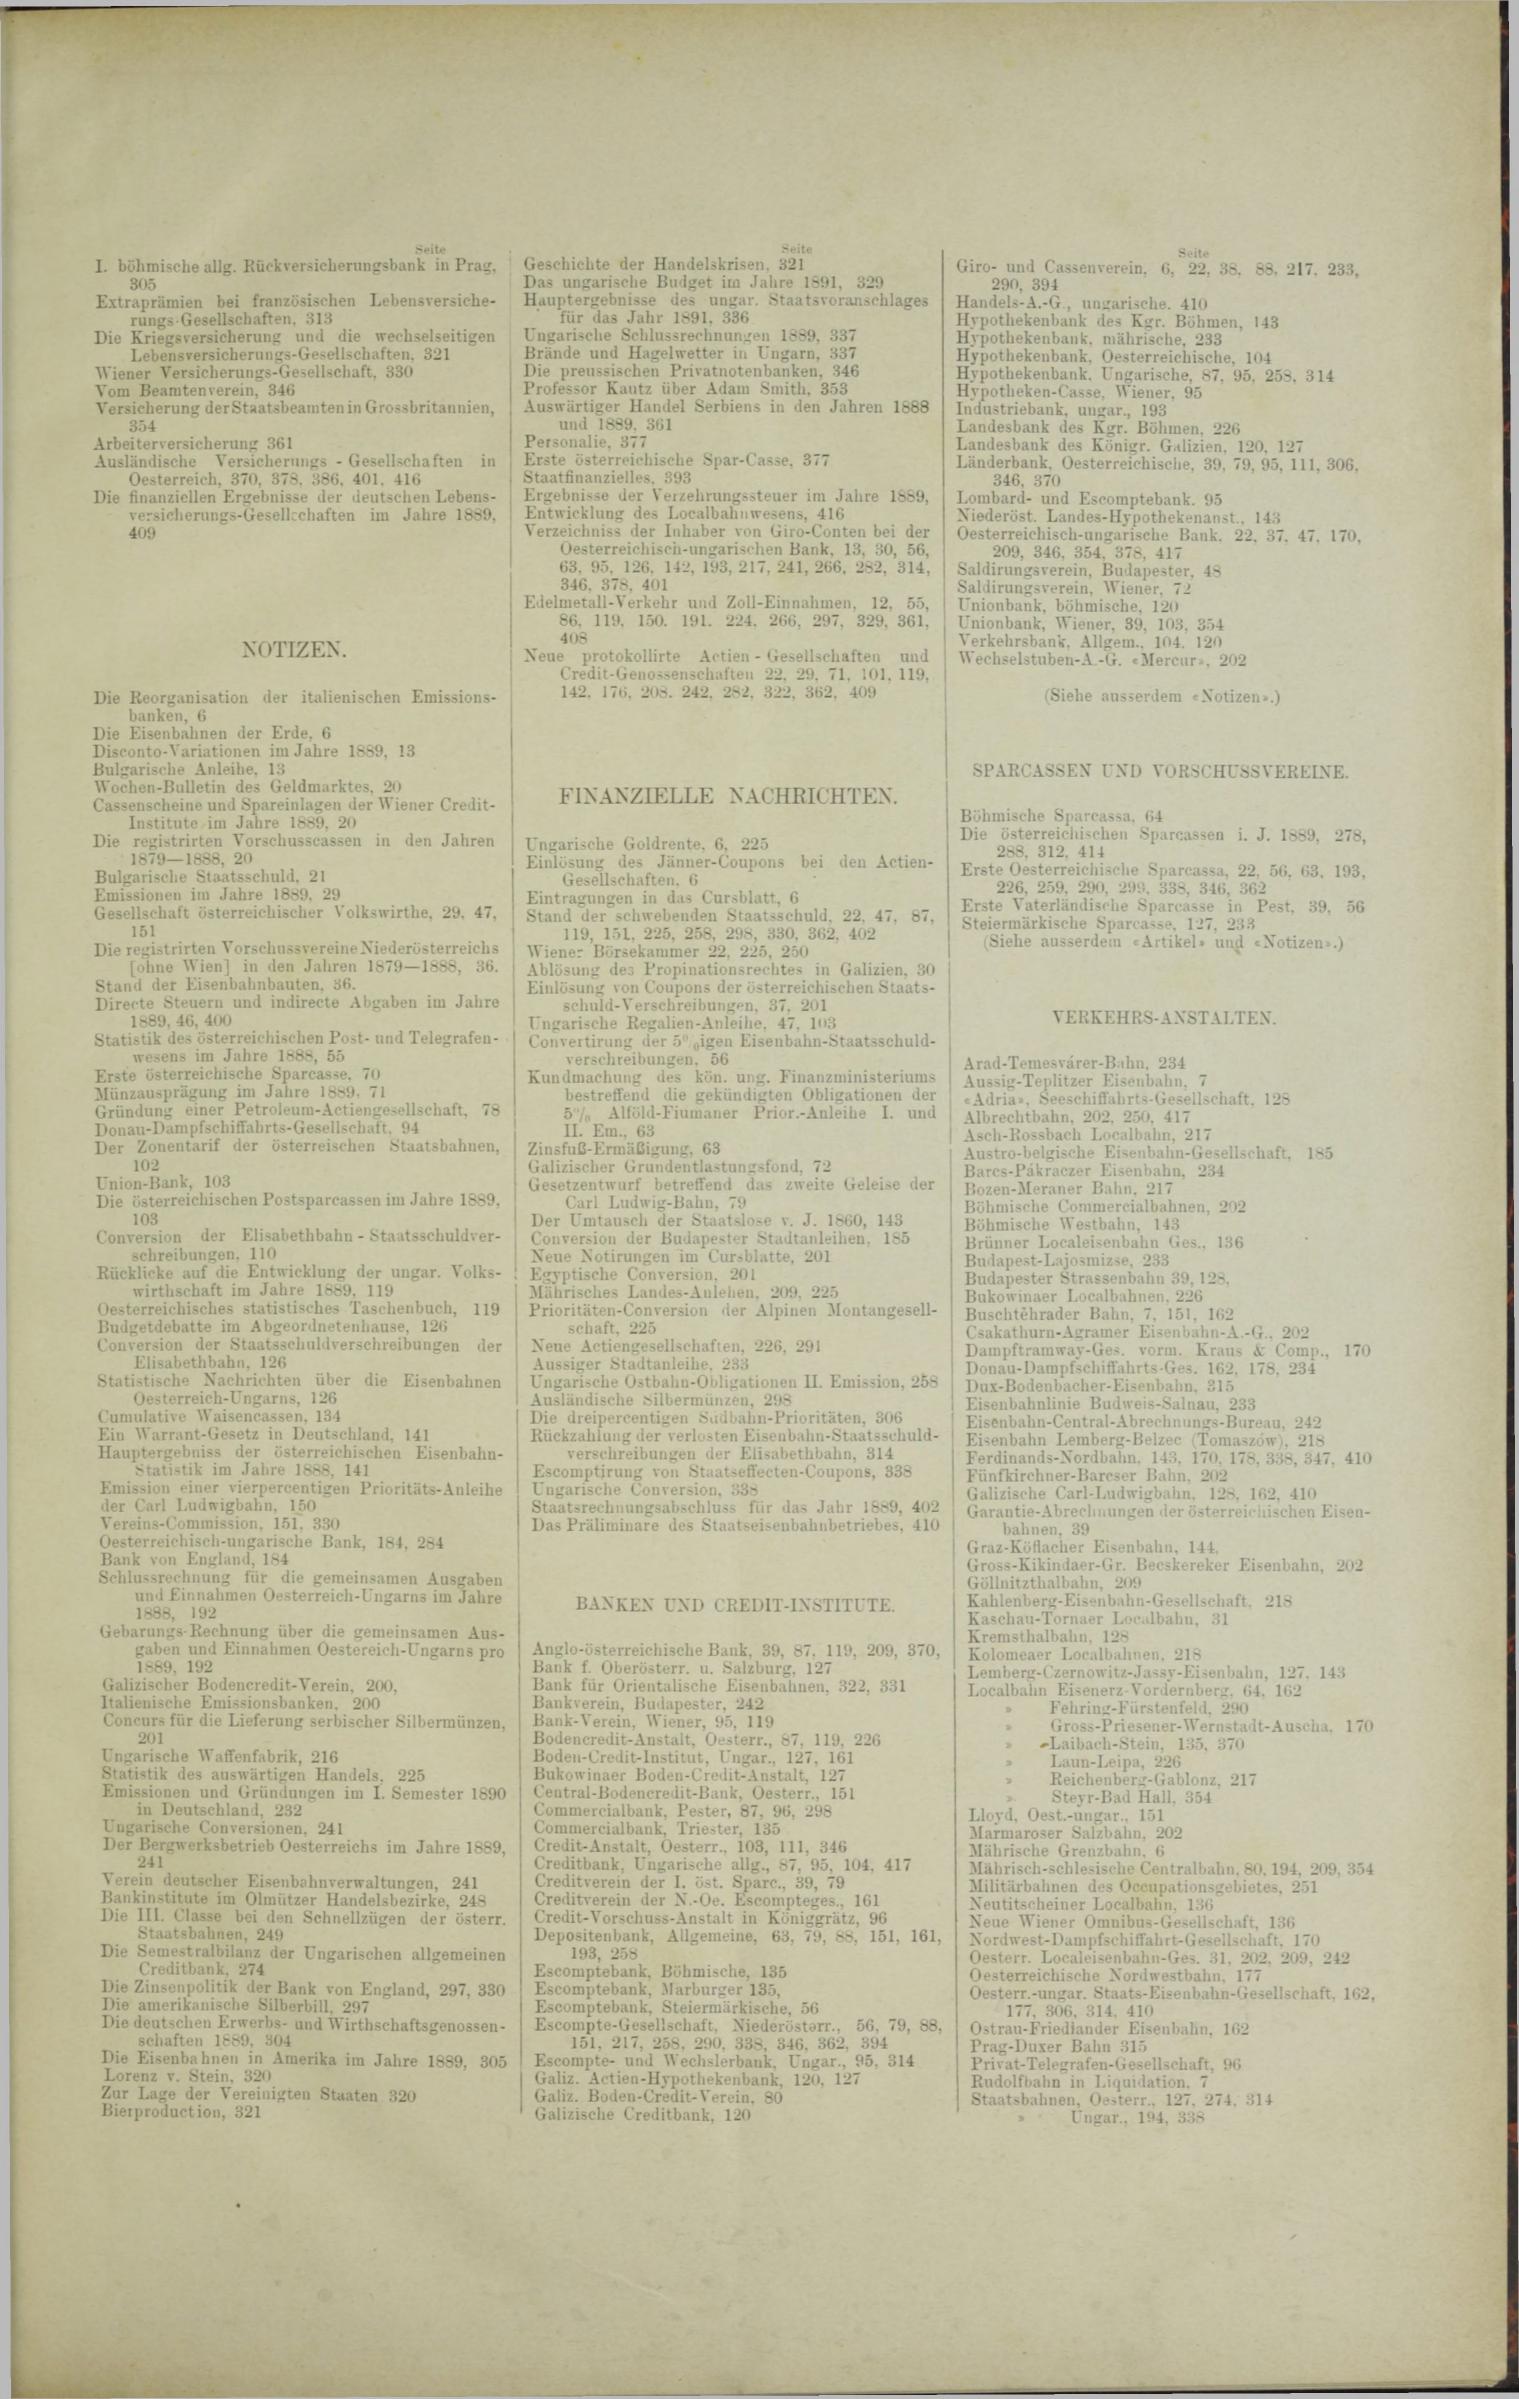 Der Tresor 13.03.1890 - Seite 11